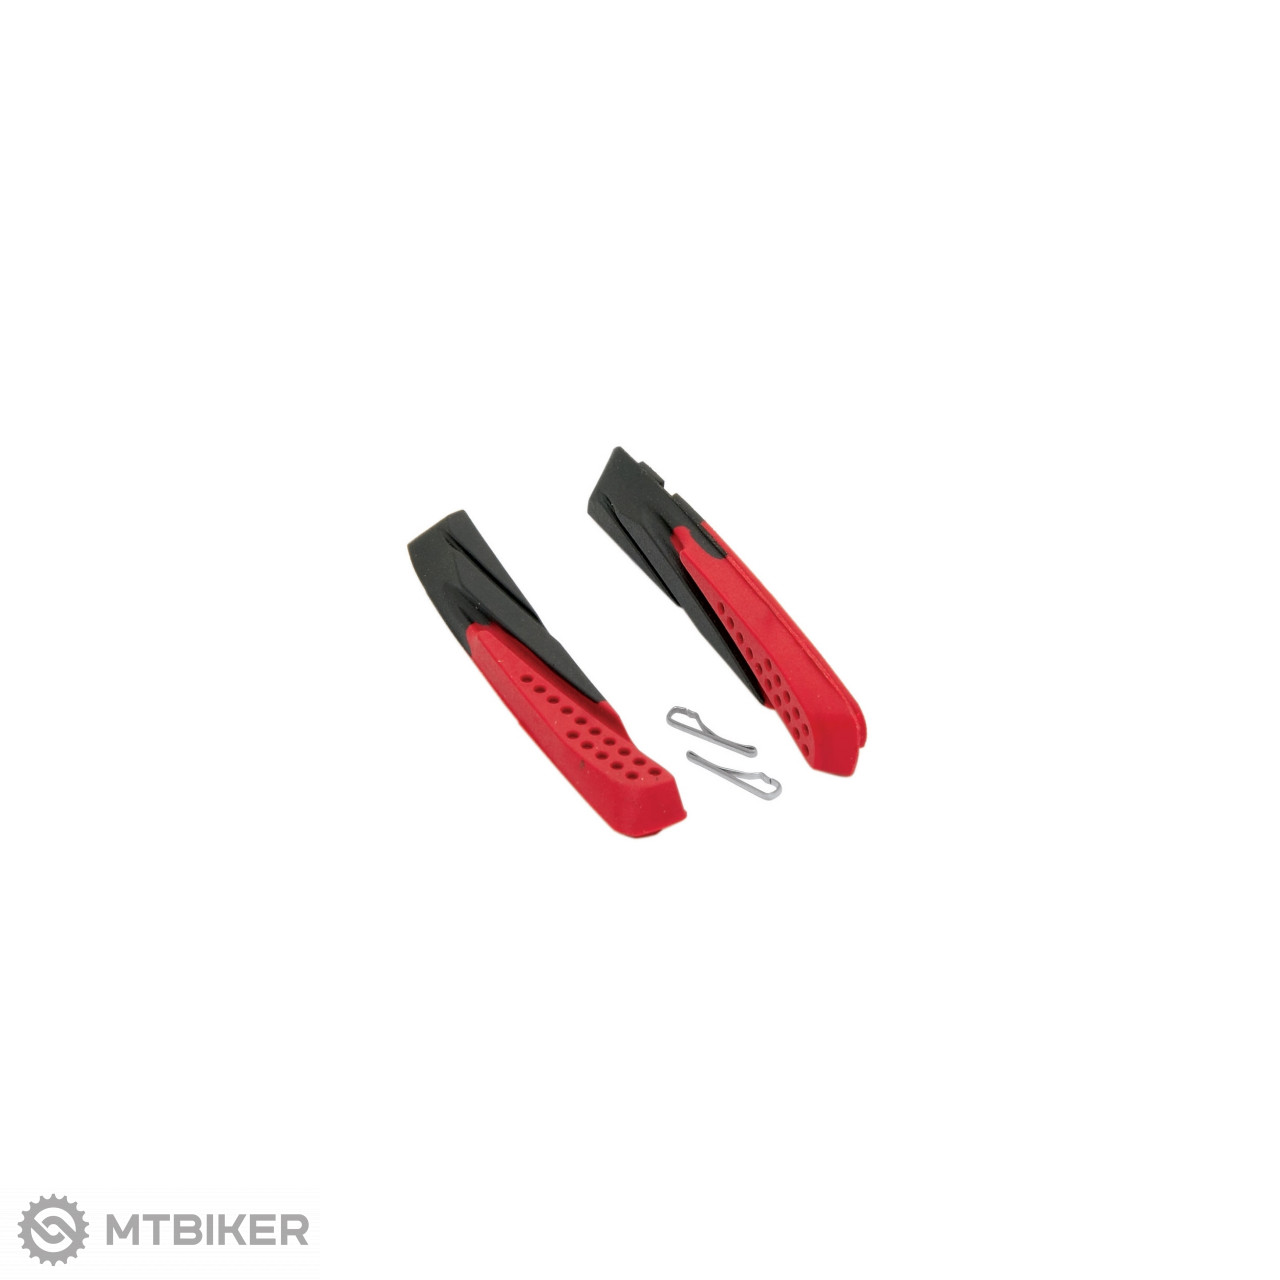 FORCE náhradní brzdové gumičky pro špalíky, V-brake, černá/červená